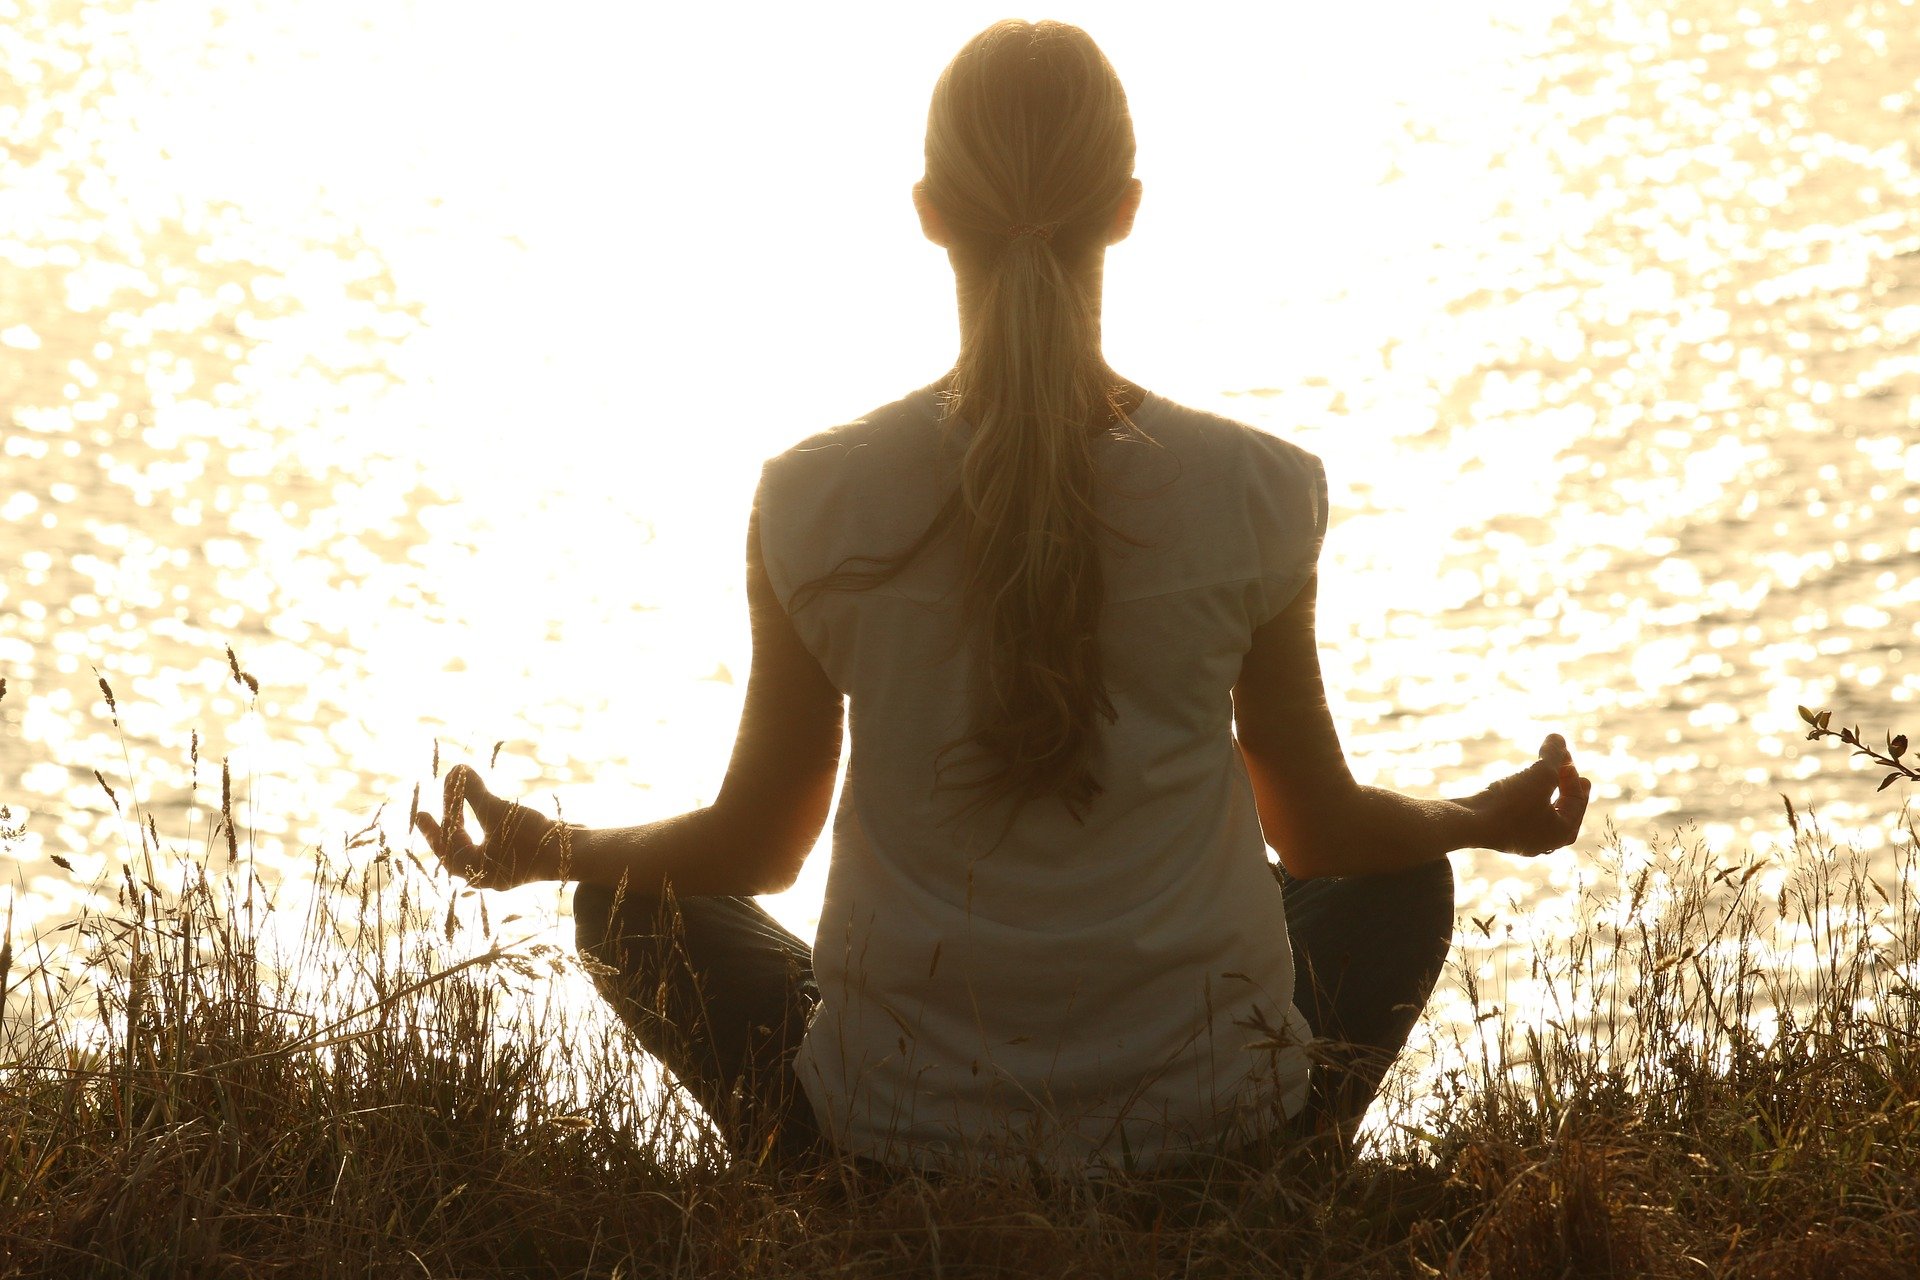 La alcaldia GAM ofrece clases de yoga gratis para jóvenes a partir de 15 años Foto: Pixabay